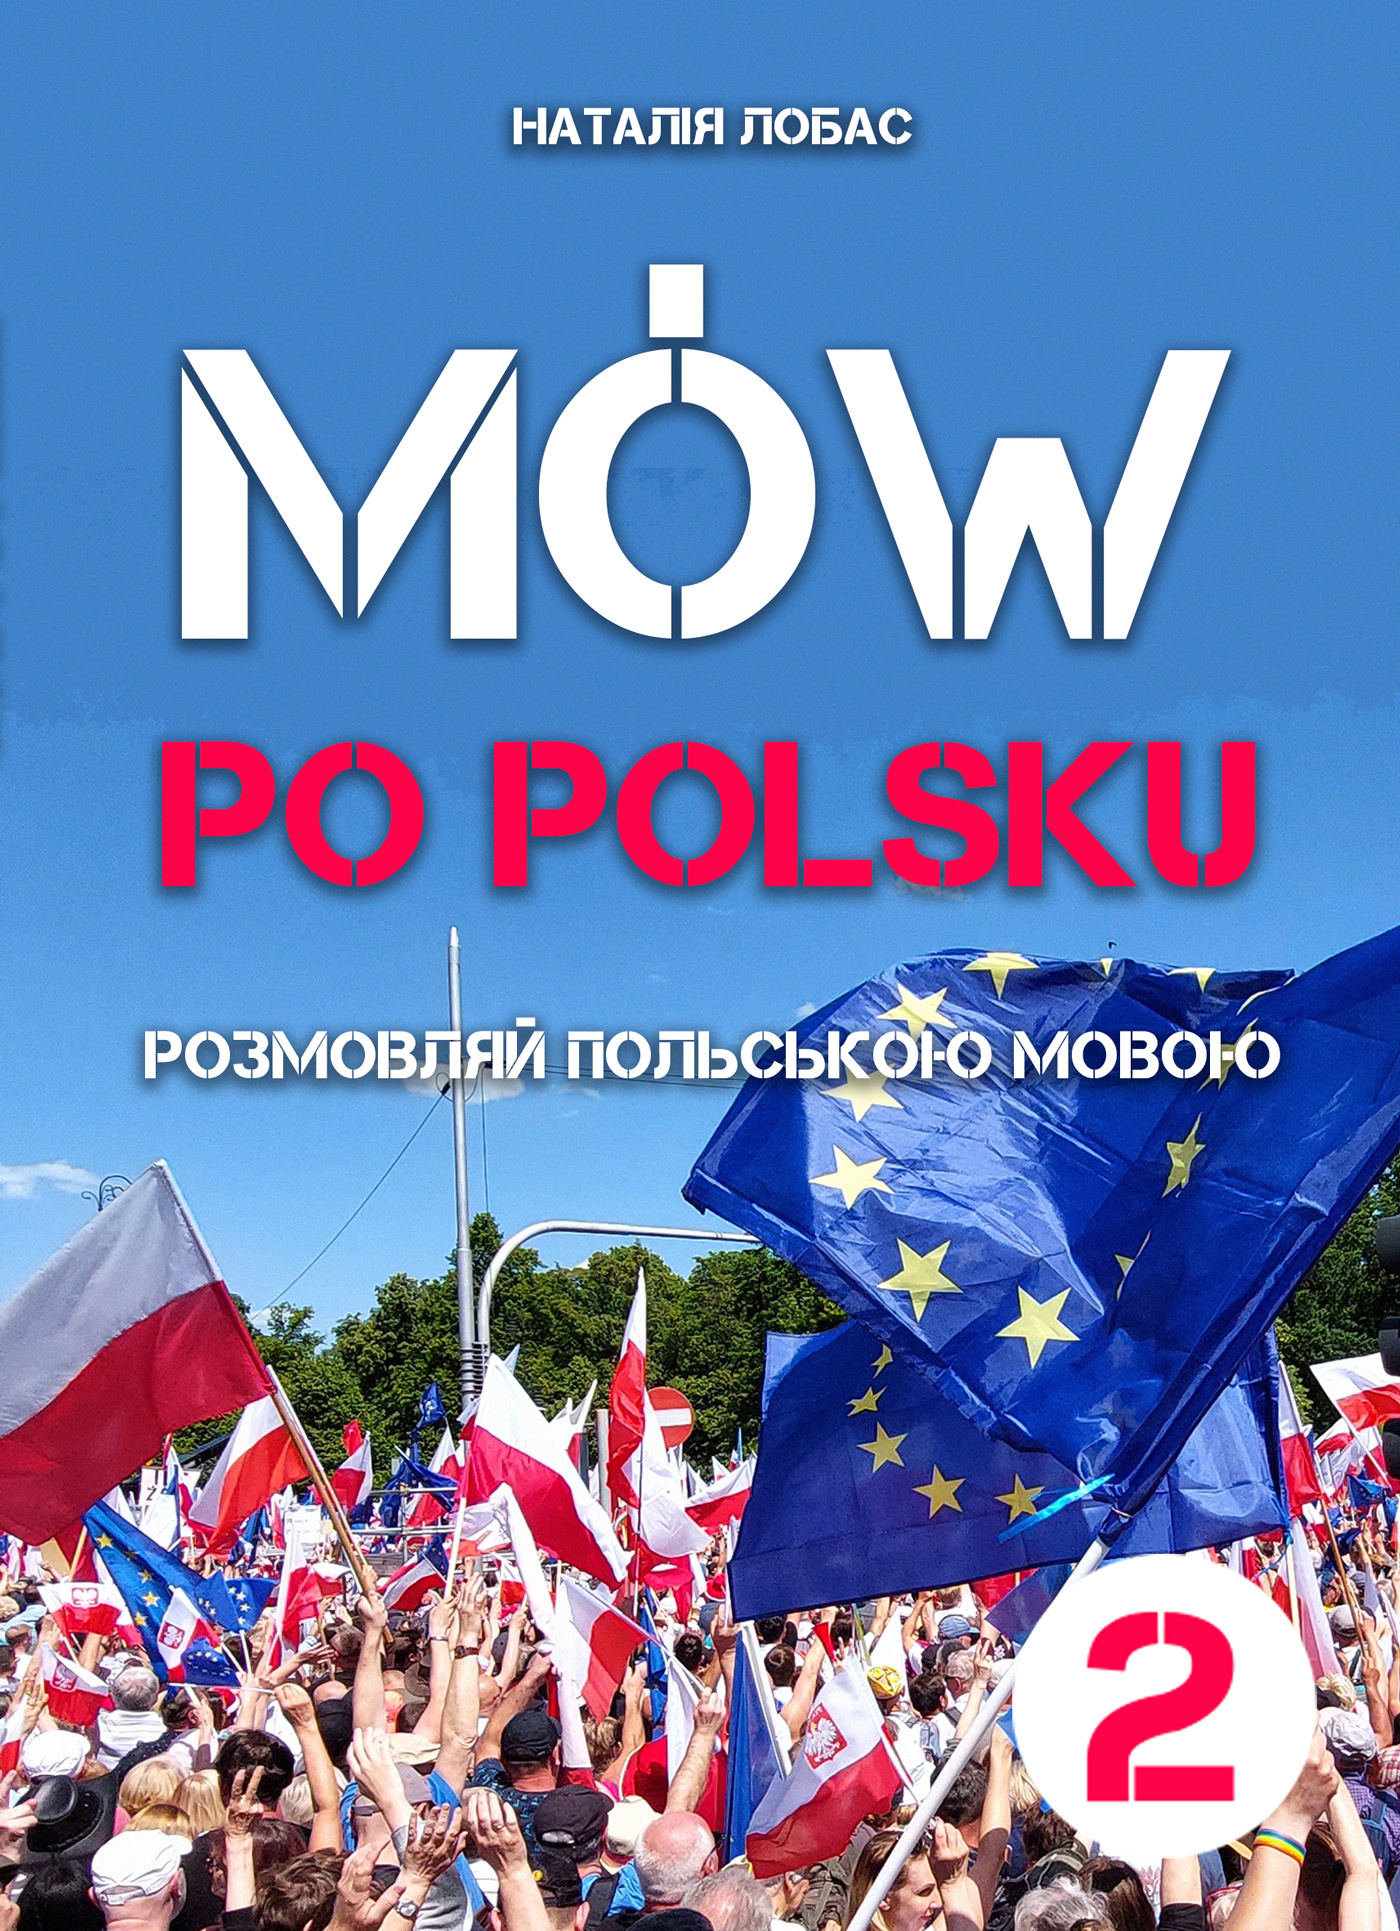 Mów po polsku. Розмовляй польською мовою, 2 том